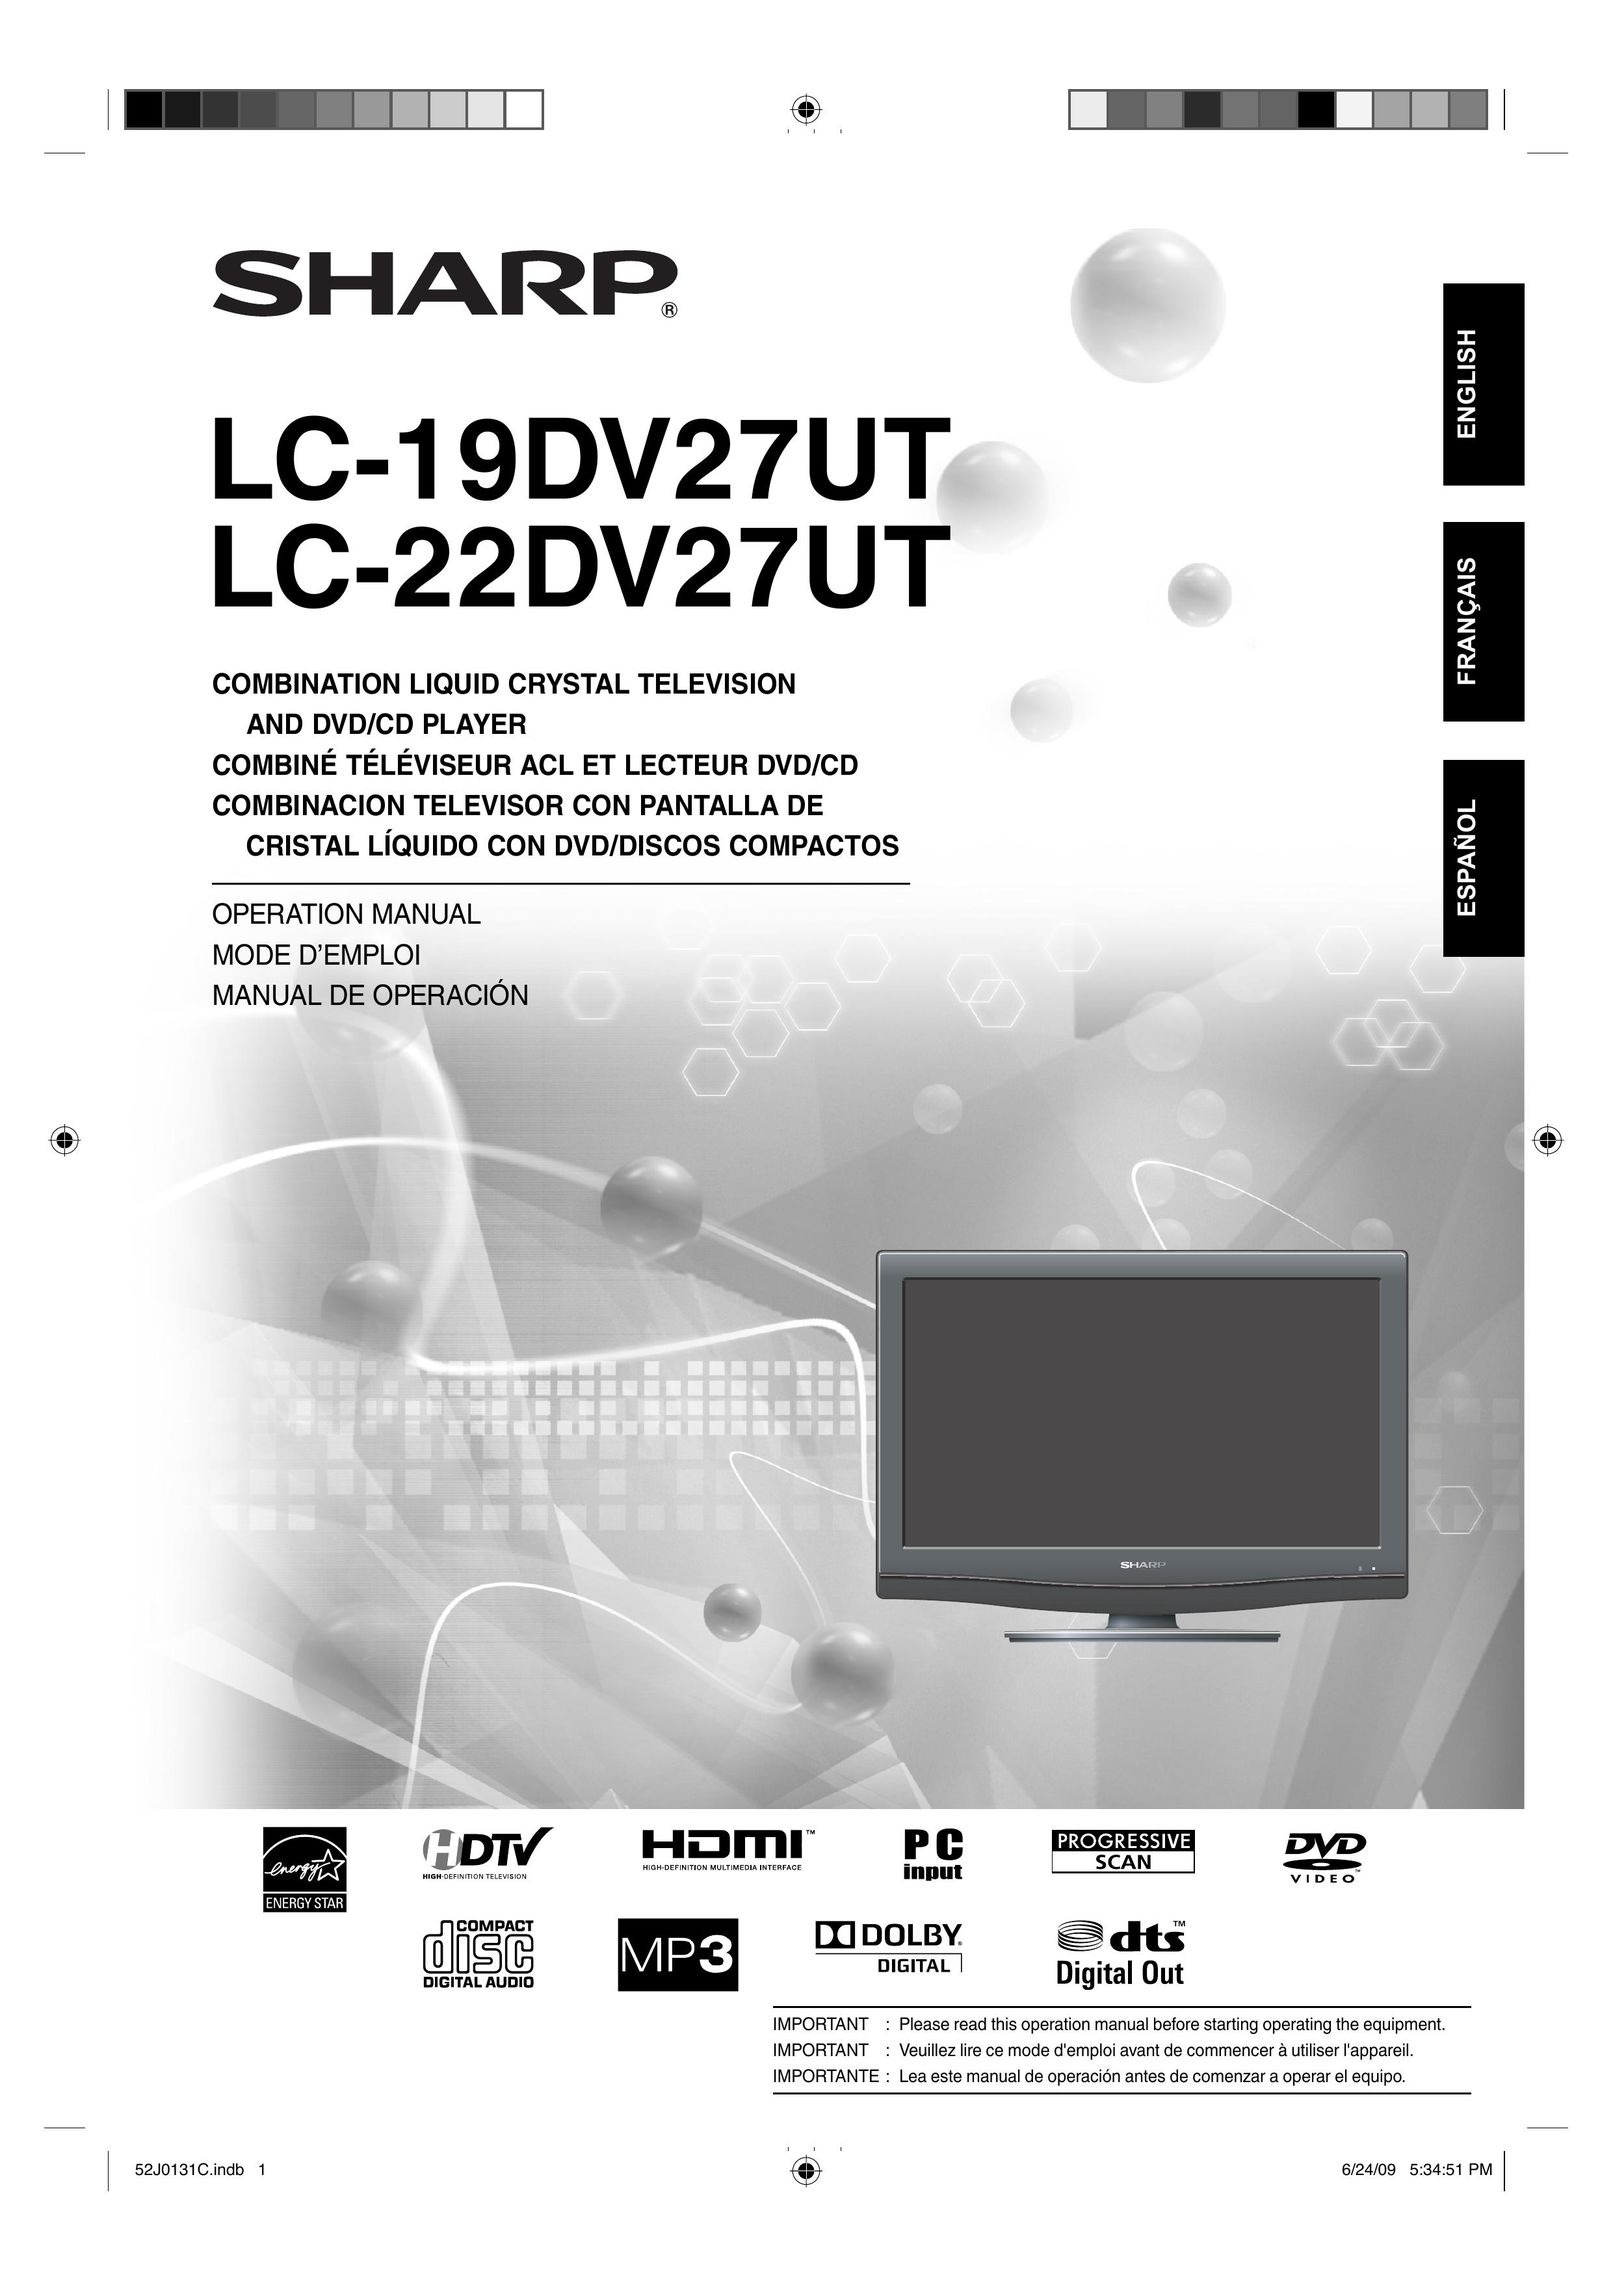 Sharp LC-22DV27UT TV DVD Combo User Manual